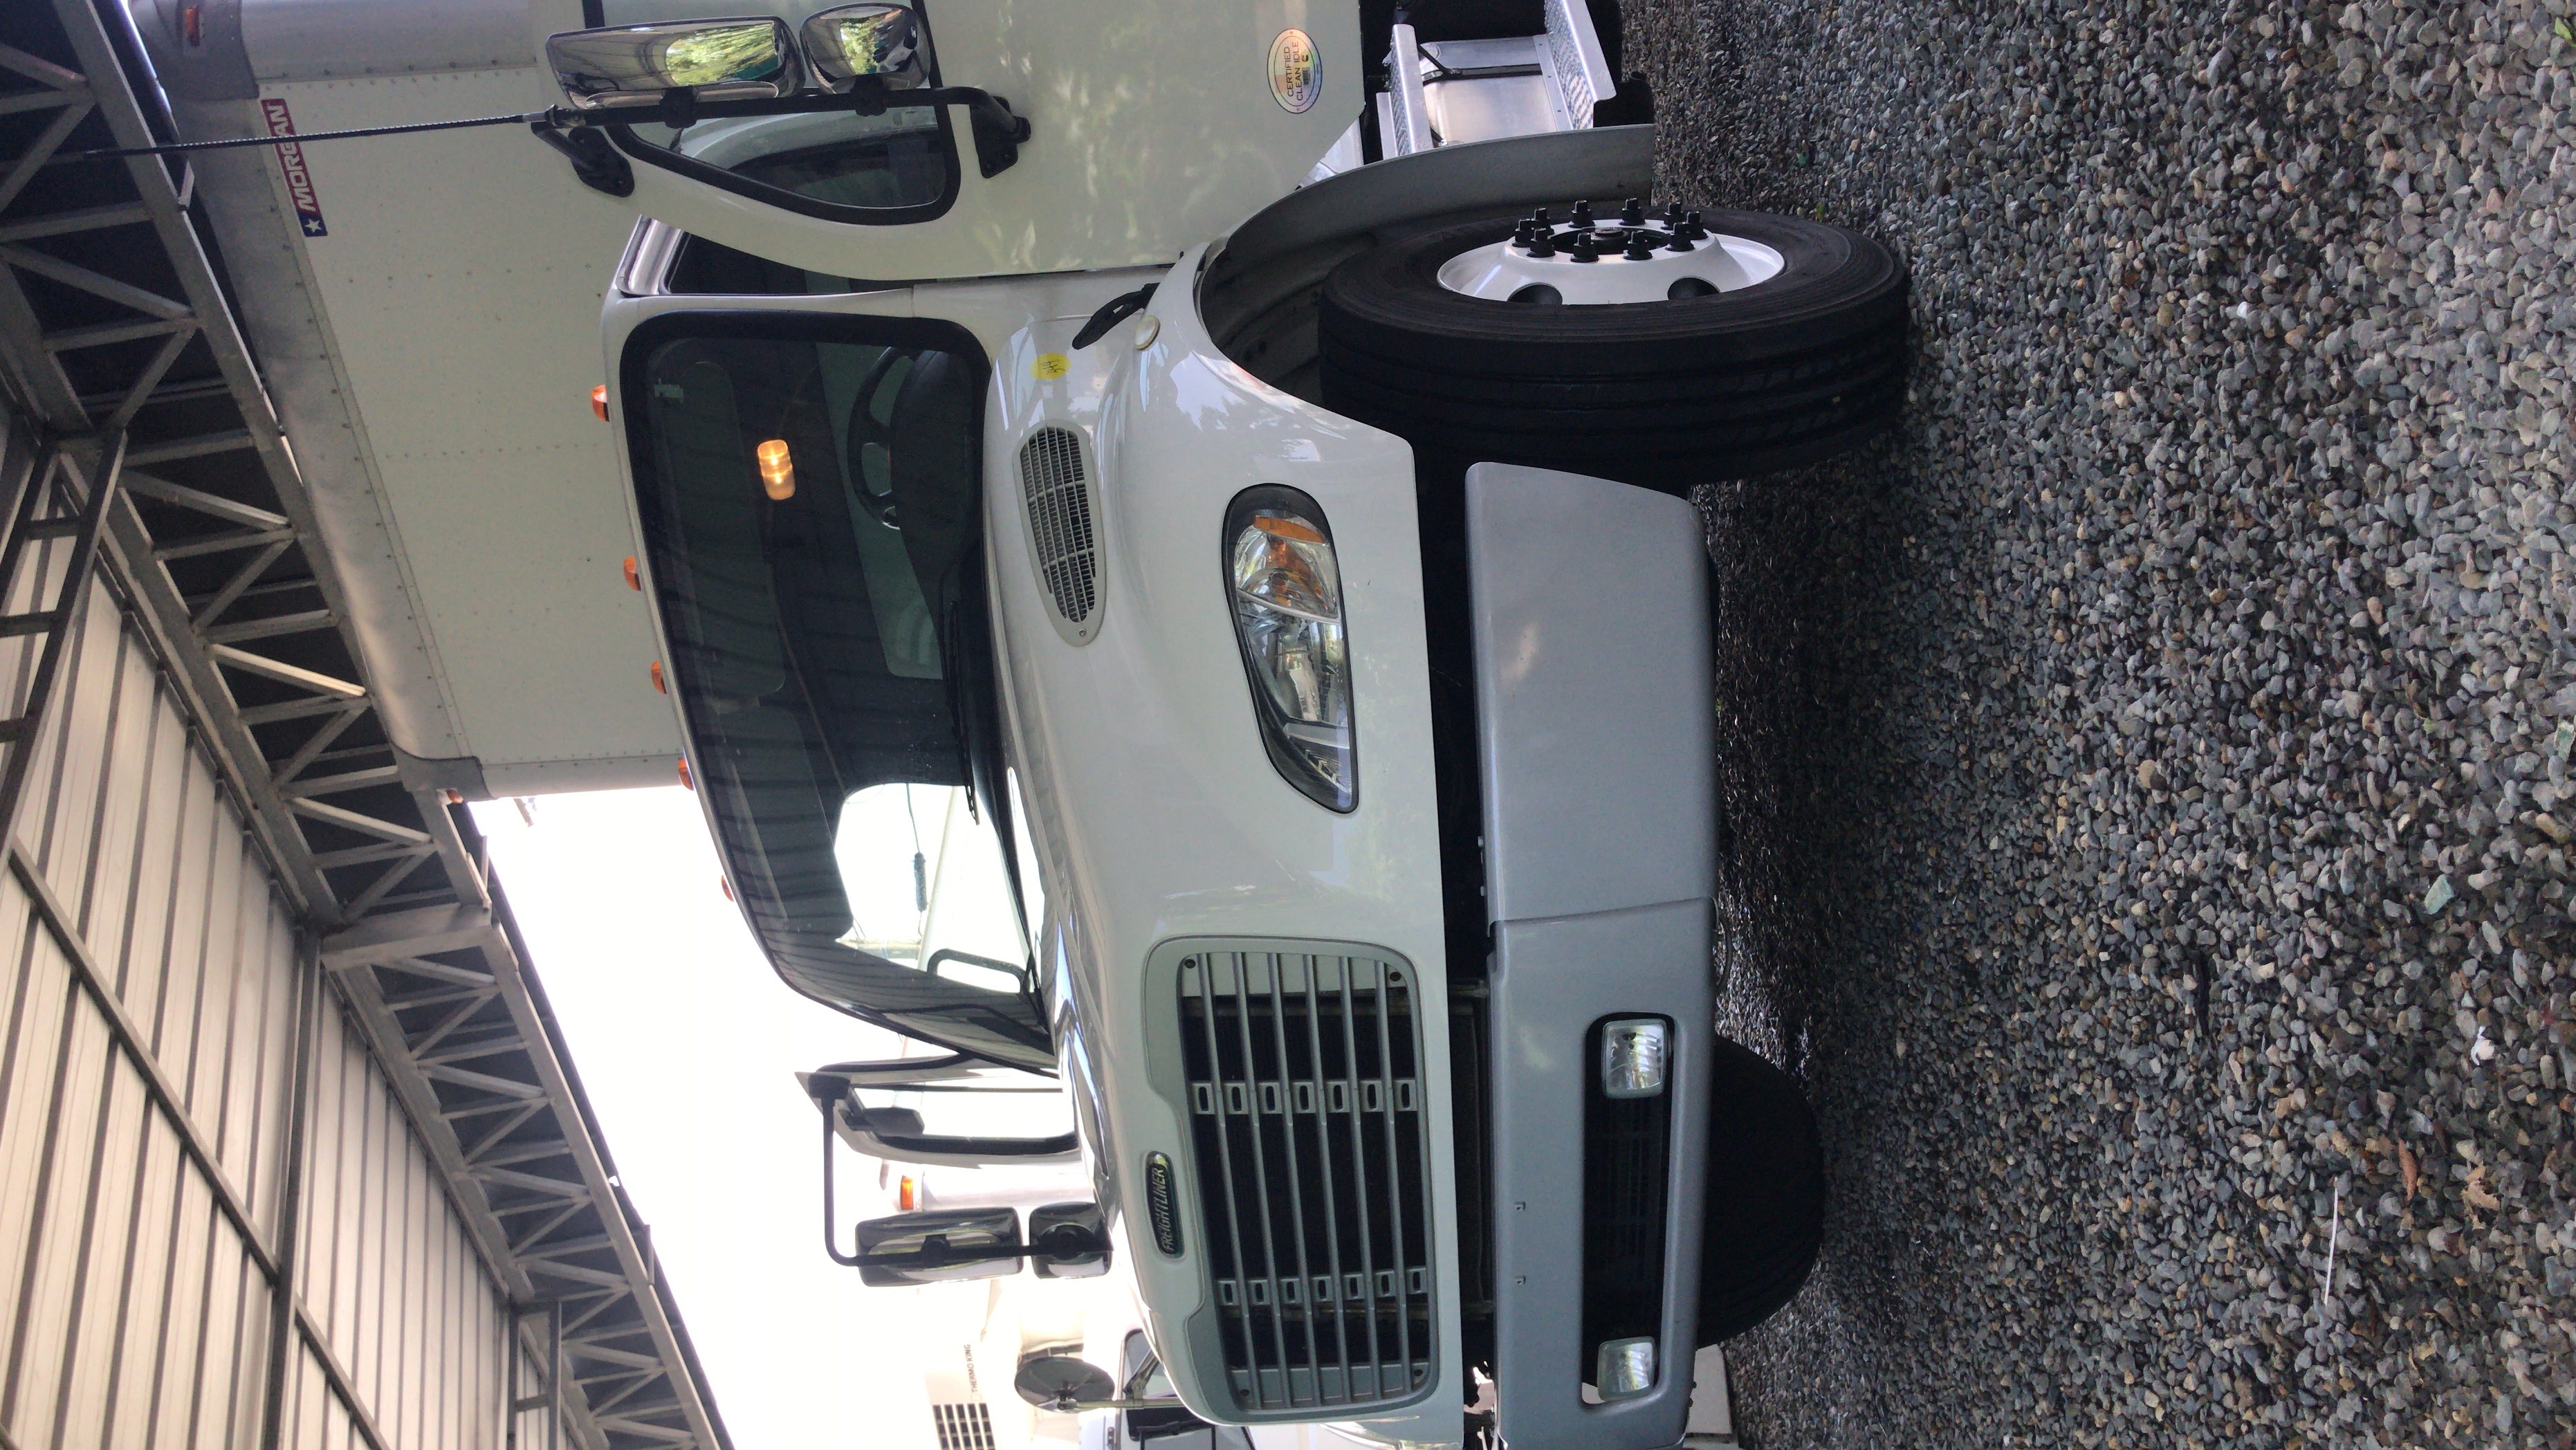 camiones y vehiculos pesados - Camión Freightliner M2 año 2013 Recién Importado con furgón seco de 28 pies 